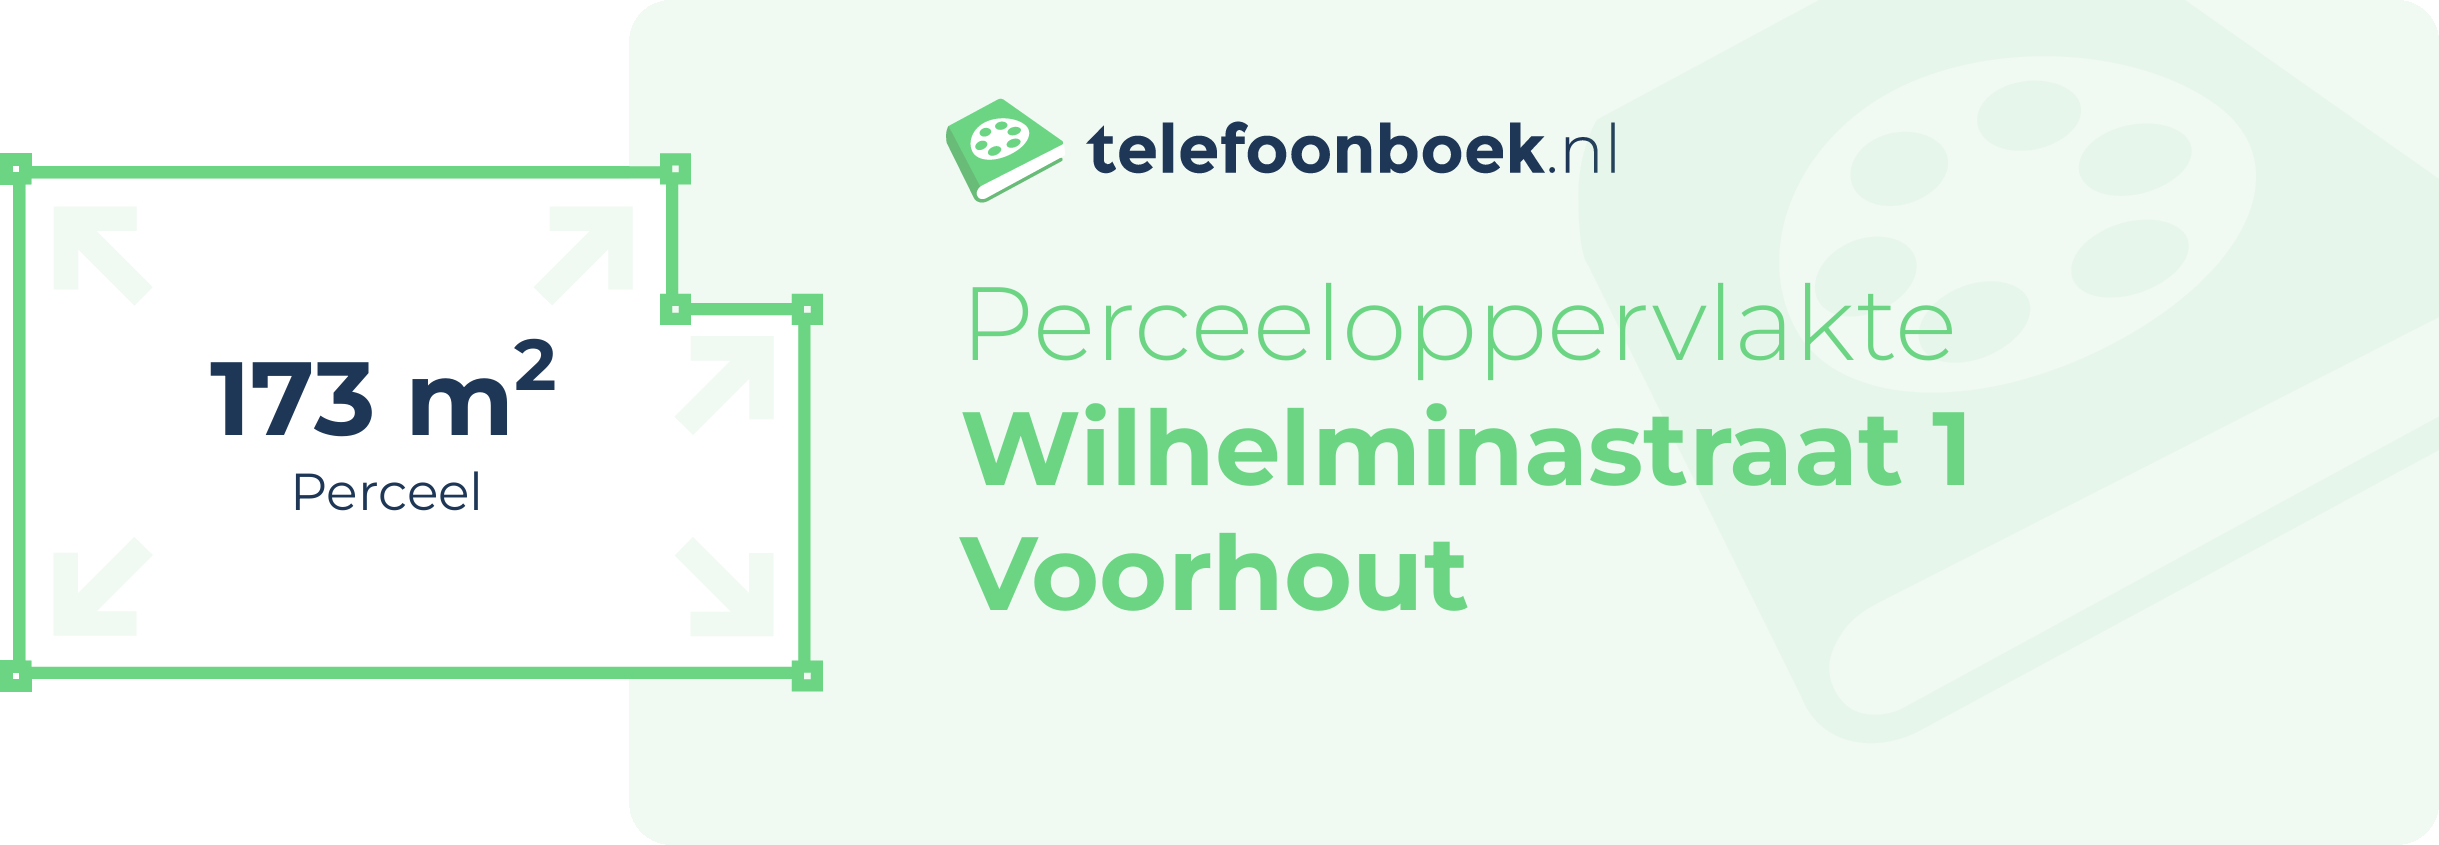 Perceeloppervlakte Wilhelminastraat 1 Voorhout